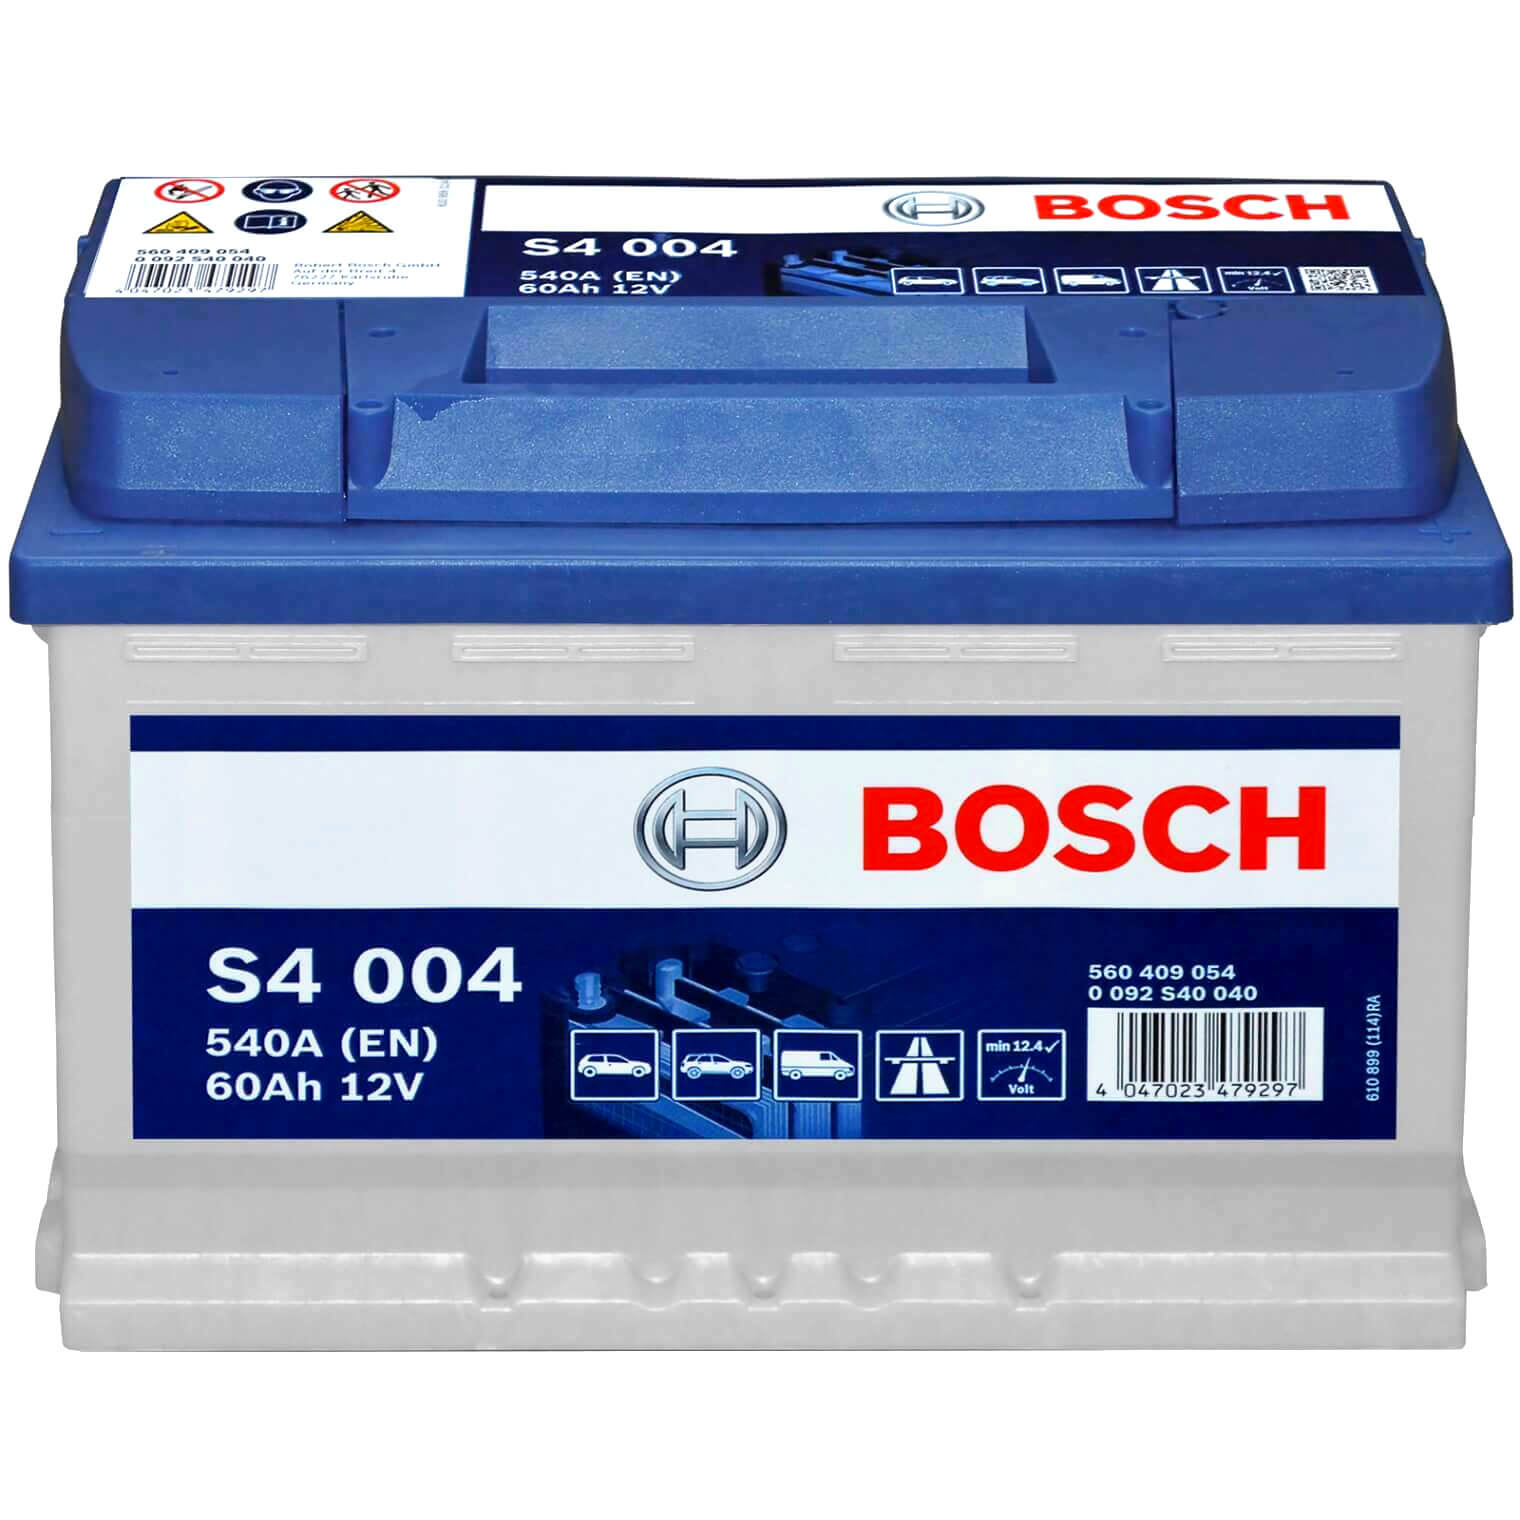 Bosch S4004 12V 60Ah 540A/EN